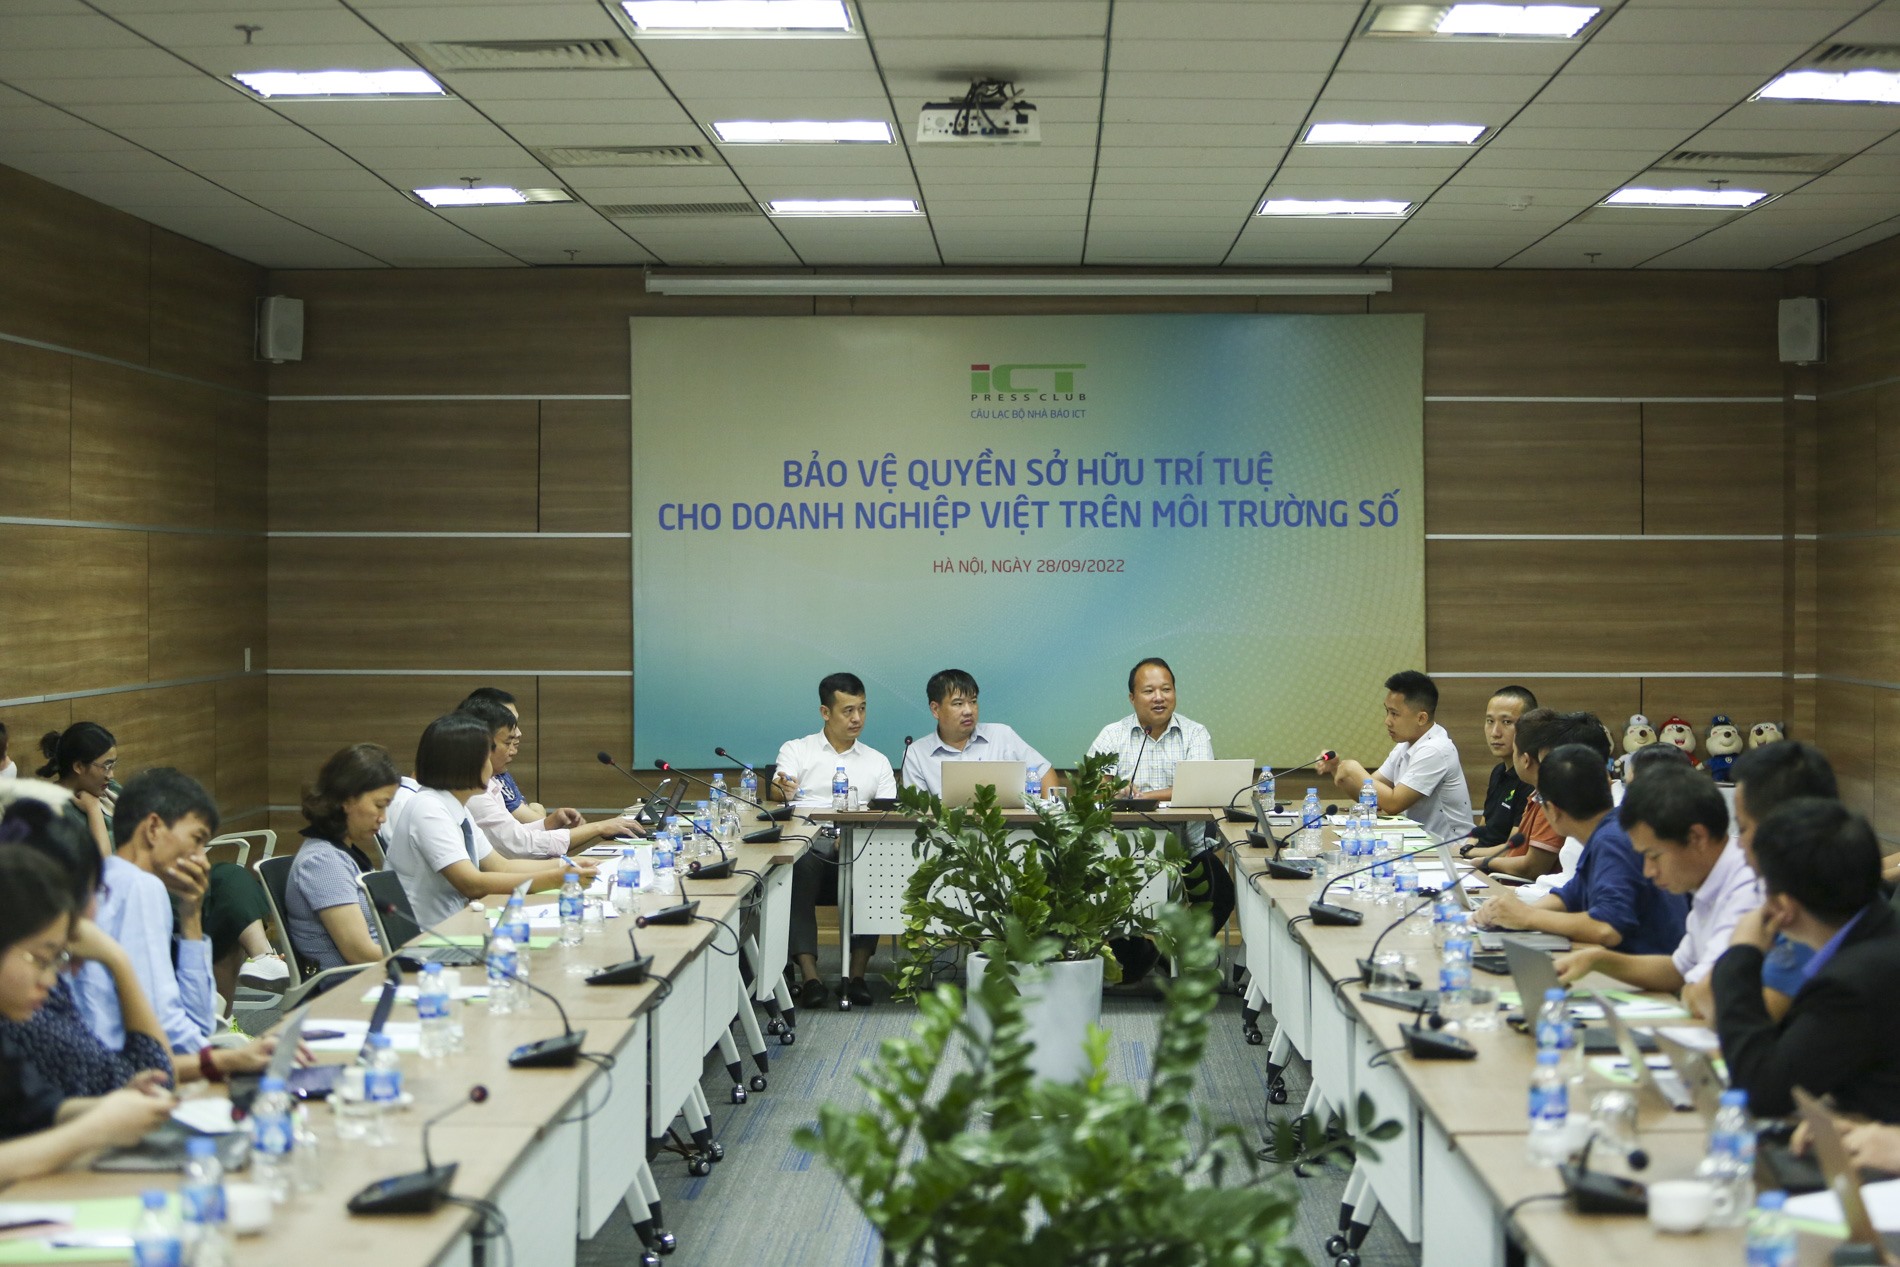 Doanh nghiệp Việt cần được hỗ trợ, bảo vệ trên không gian mạng